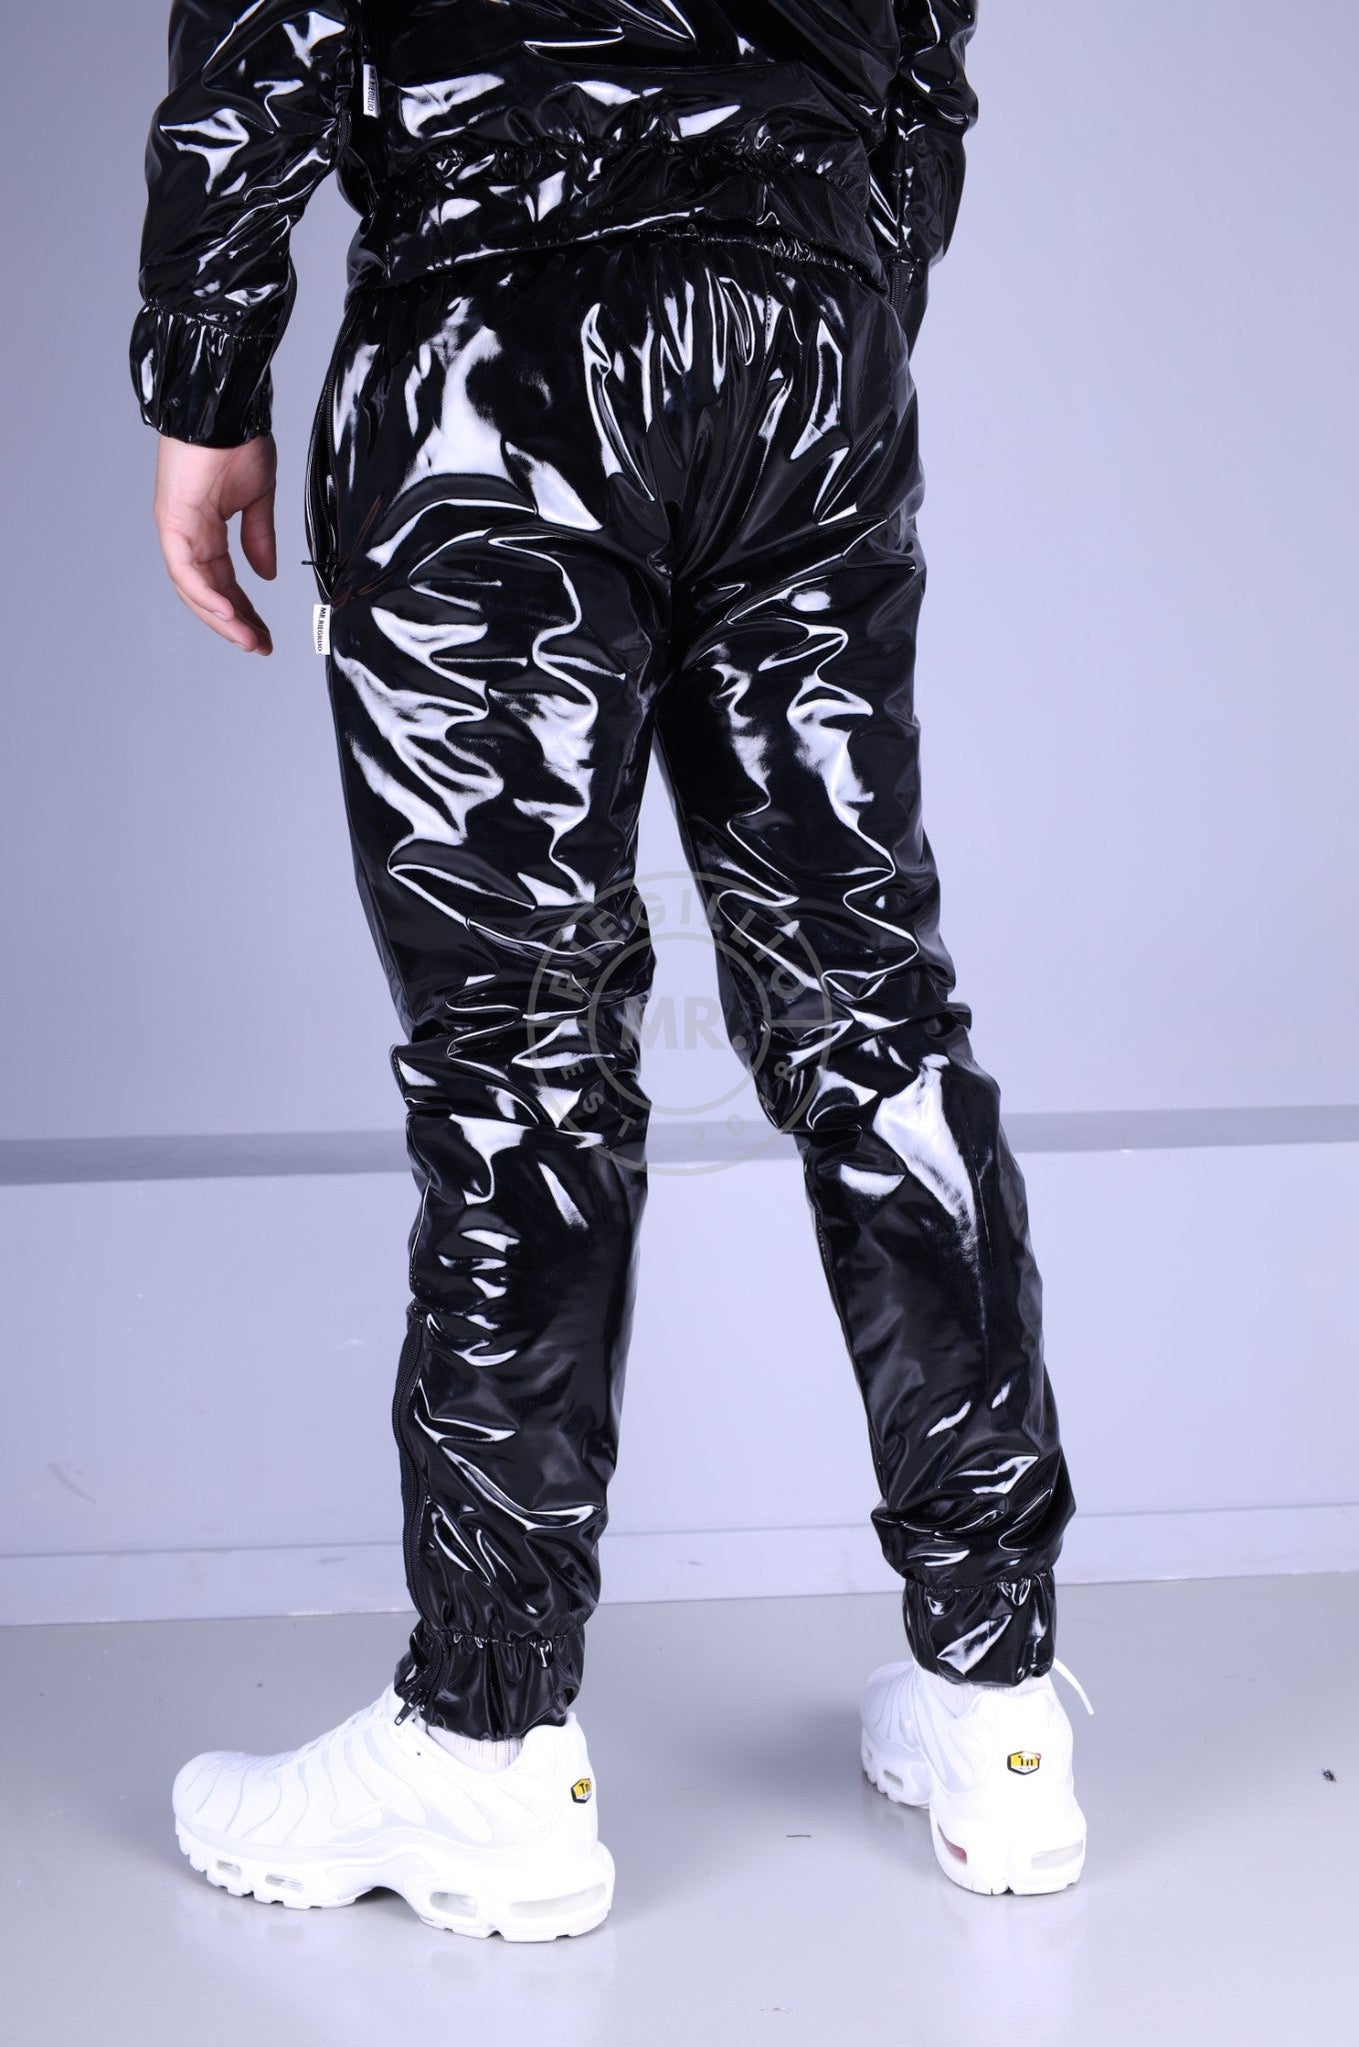 Shiny Black PVC Briefs. One Size M/L. Pants, Panties, Baggy